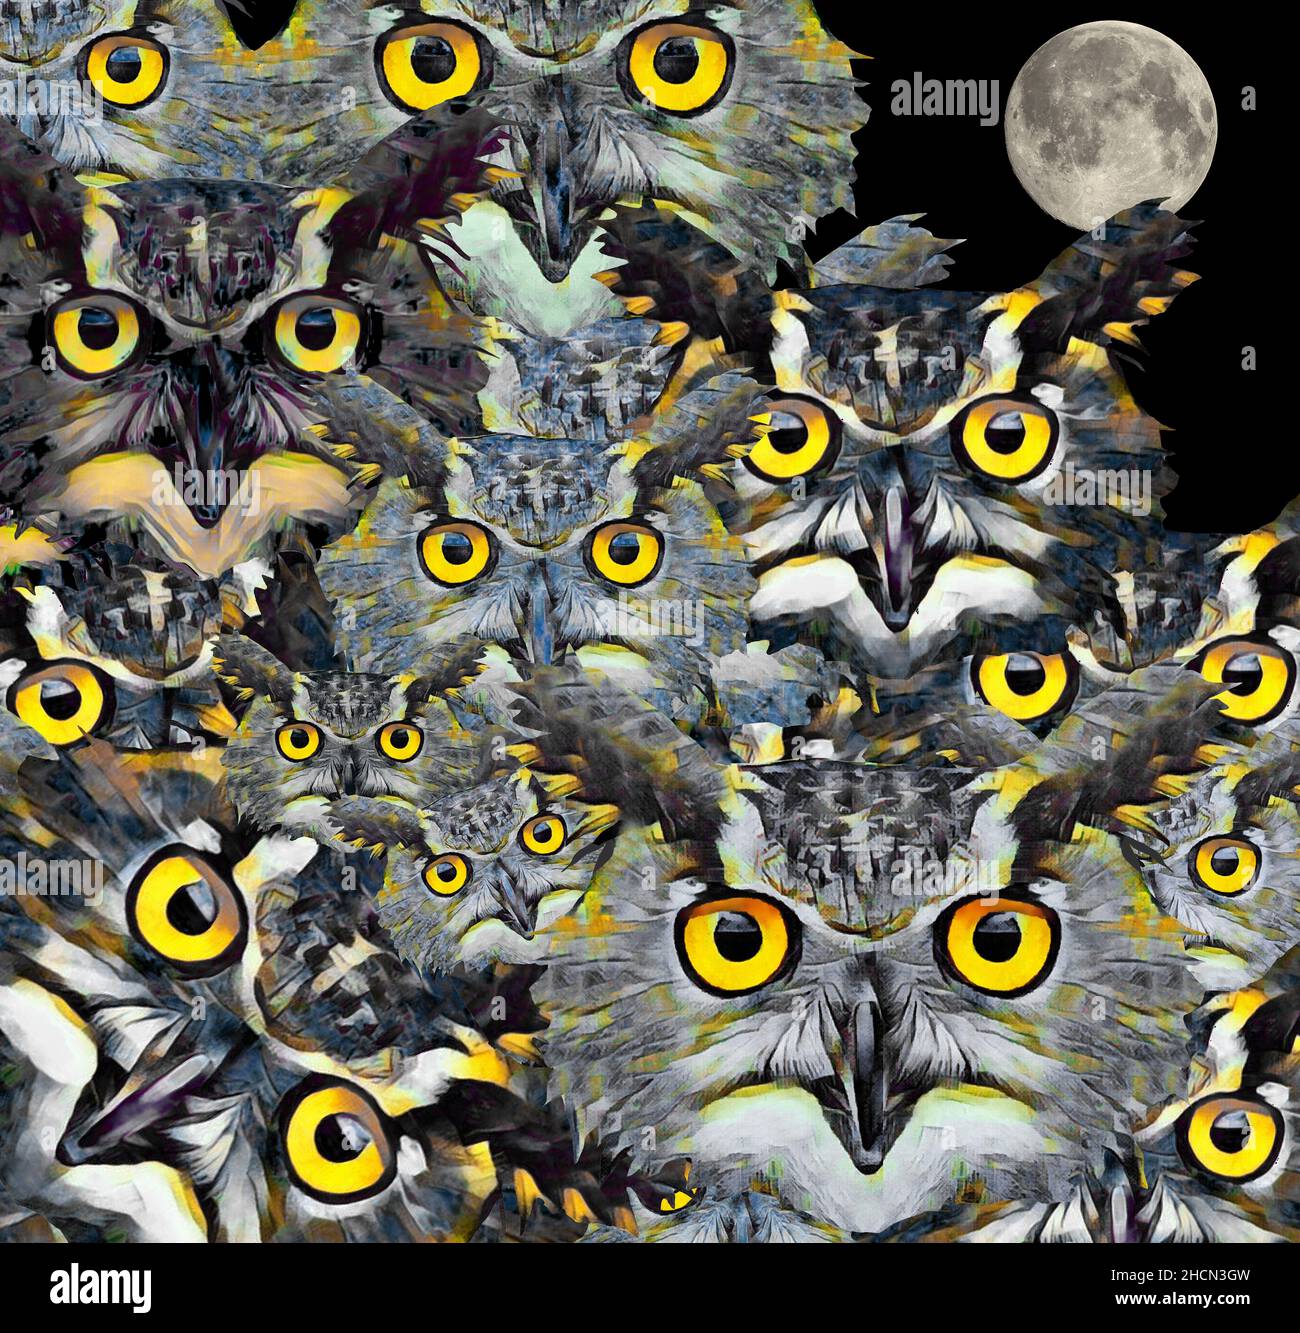 Eine Schar großer gehörnter Eulen hat ihre Augen auf Sie, den Betrachter in dieser 3-d-Illustration über die Tierwelt. Stockfoto